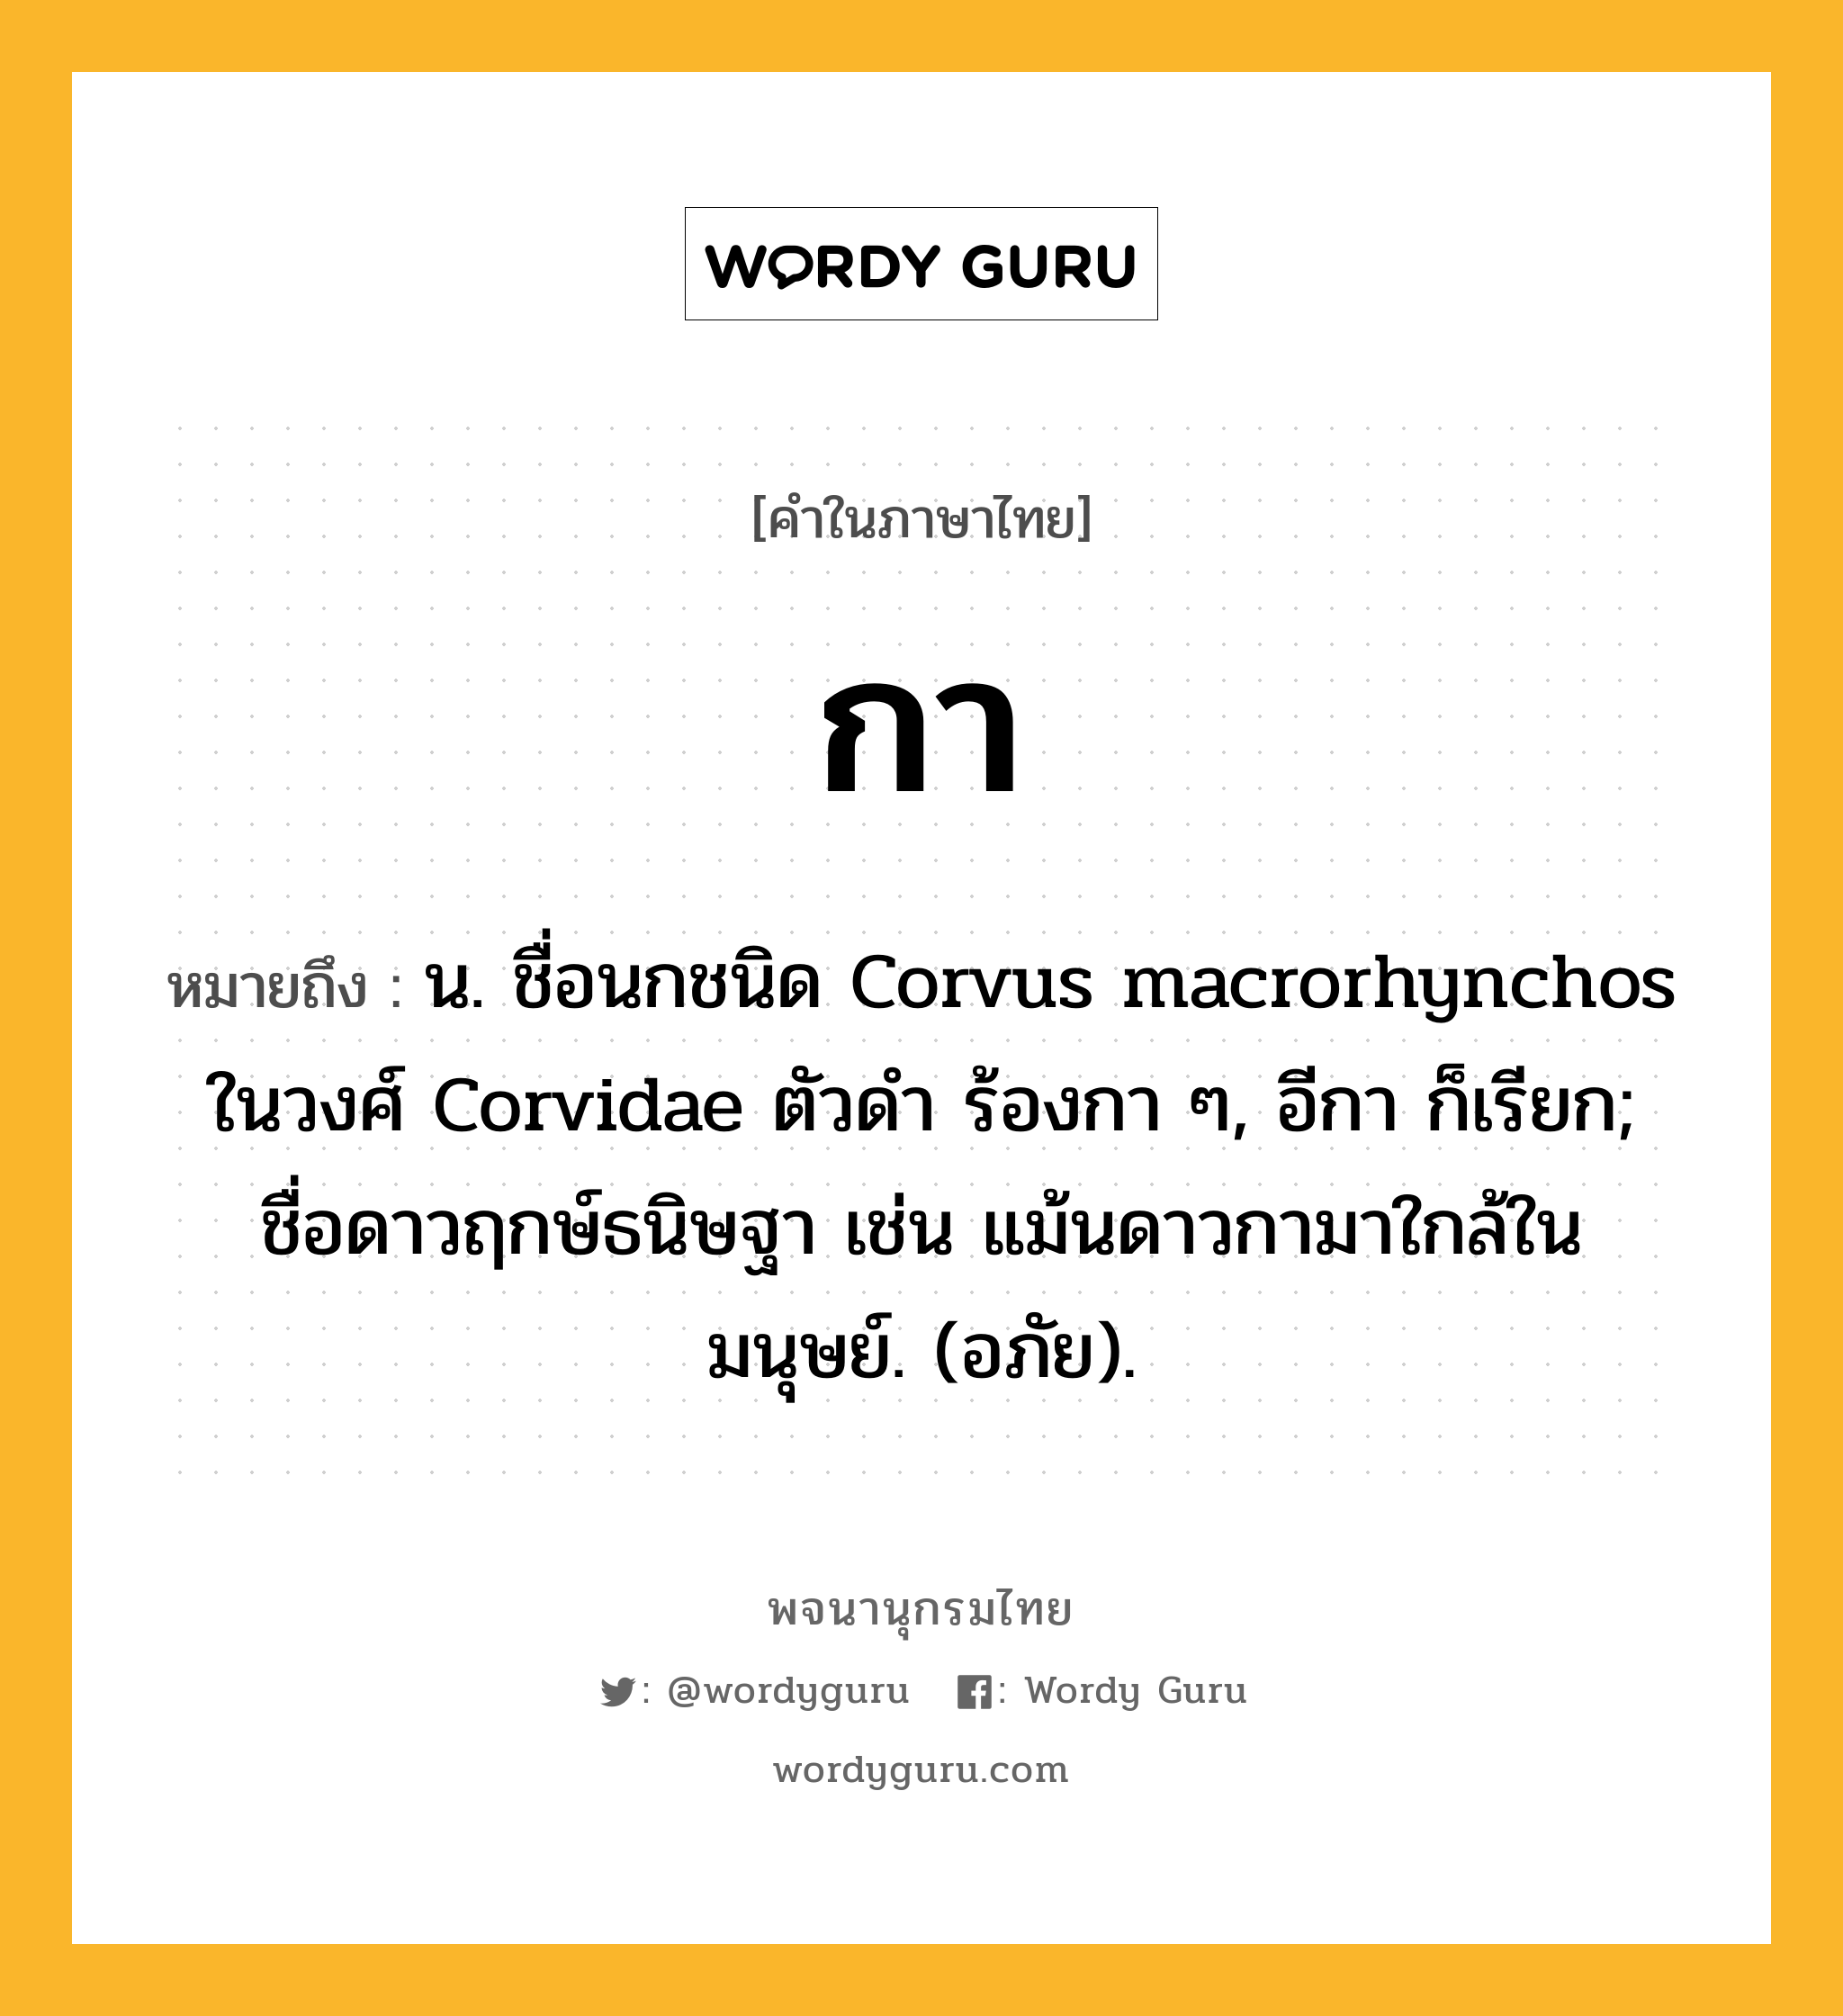 กา หมายถึงอะไร?, คำในภาษาไทย กา หมายถึง น. ชื่อนกชนิด Corvus macrorhynchos ในวงศ์ Corvidae ตัวดํา ร้องกา ๆ, อีกา ก็เรียก; ชื่อดาวฤกษ์ธนิษฐา เช่น แม้นดาวกามาใกล้ในมนุษย์. (อภัย).